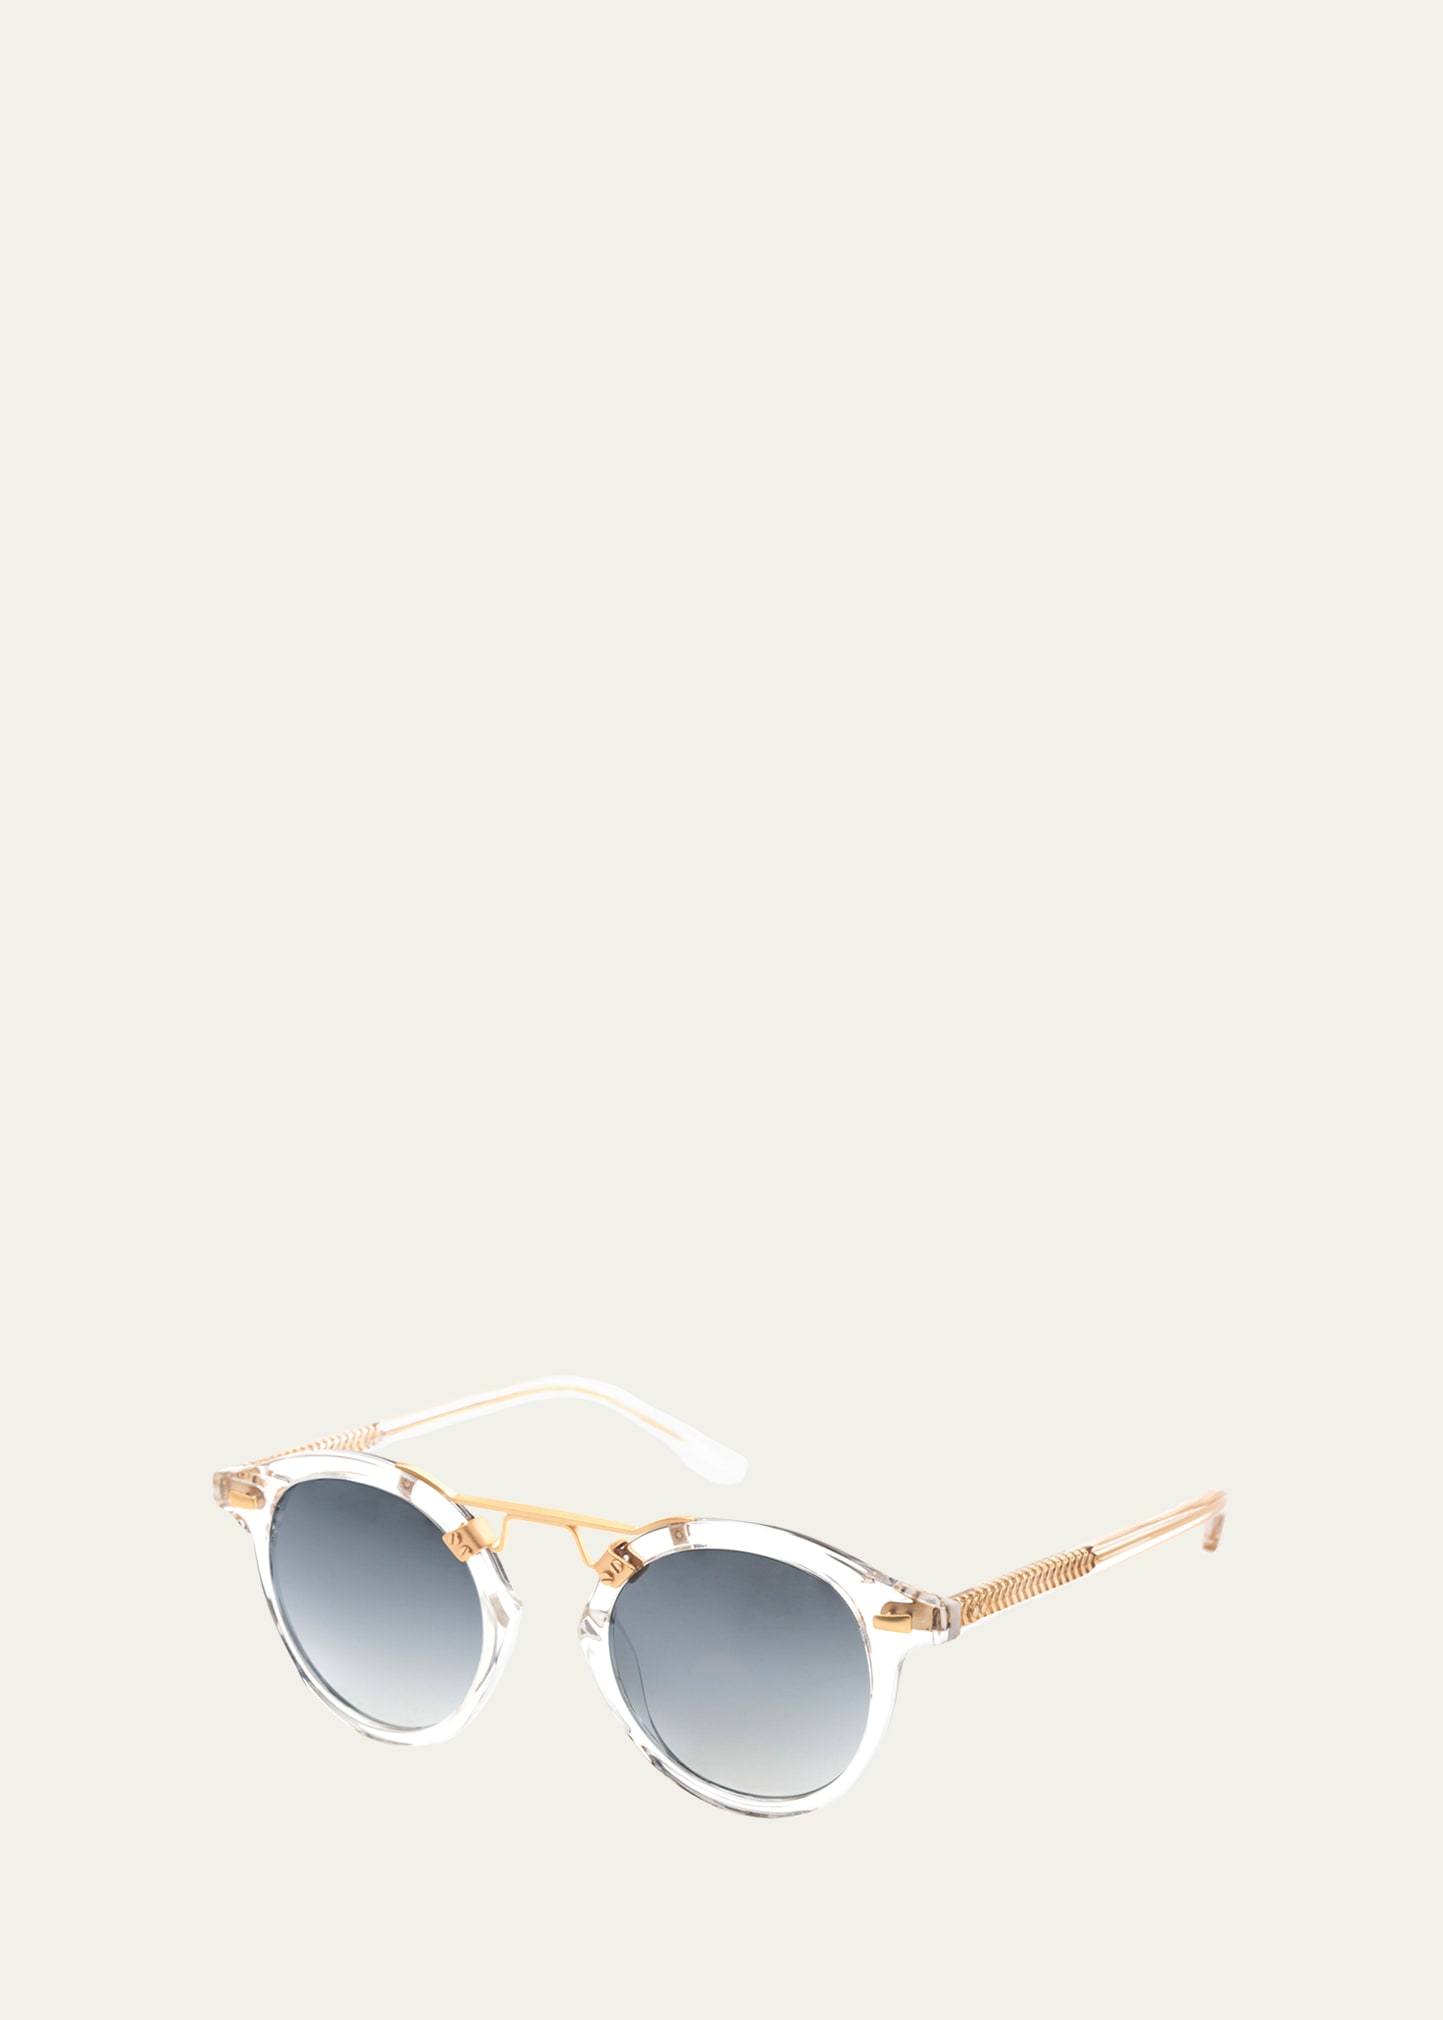 KREWE St. Louis Round Mirrored Sunglasses